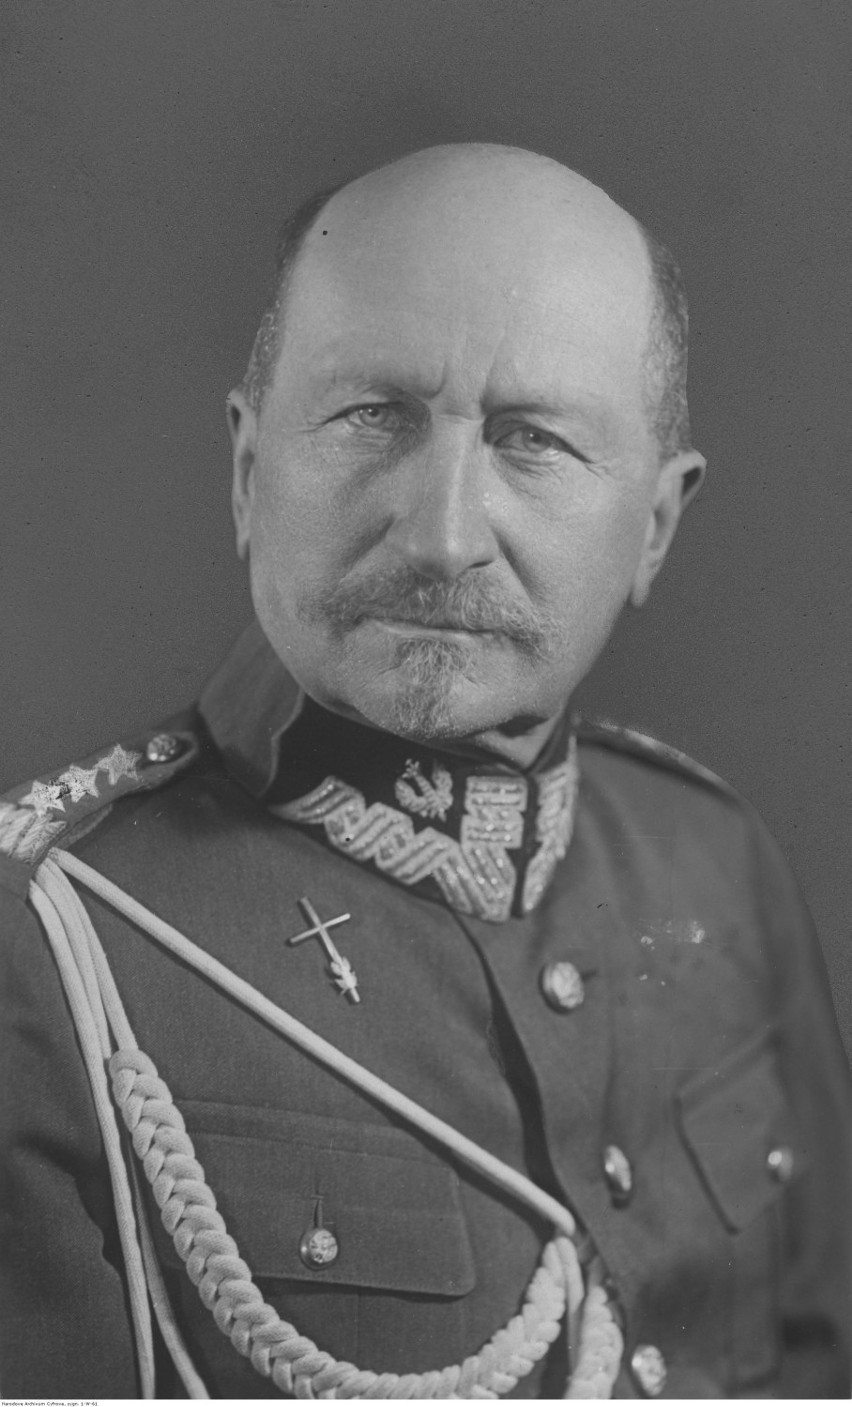 Generał broni Józef Dowbór-Muśnicki w okresie międzywojennym